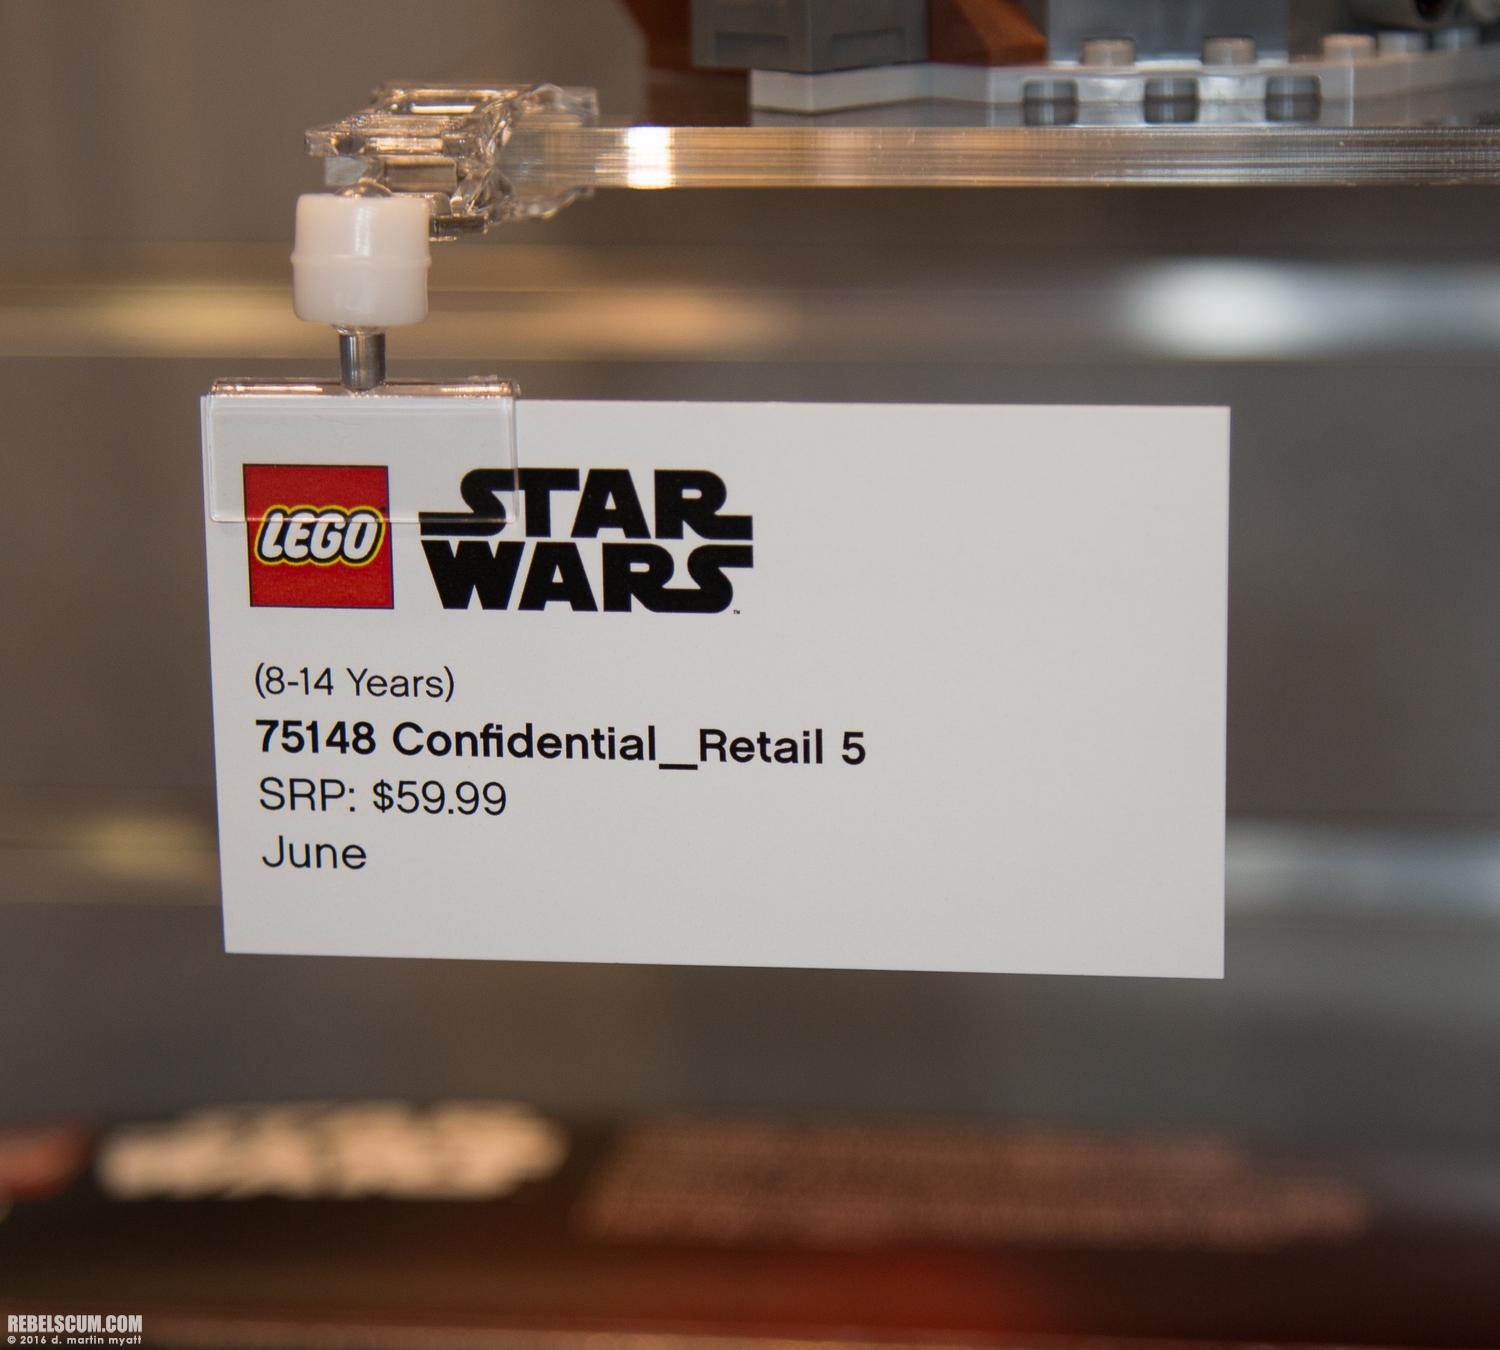 LEGO-2015-International-Toy-Fair-Star-Wars-087.jpg